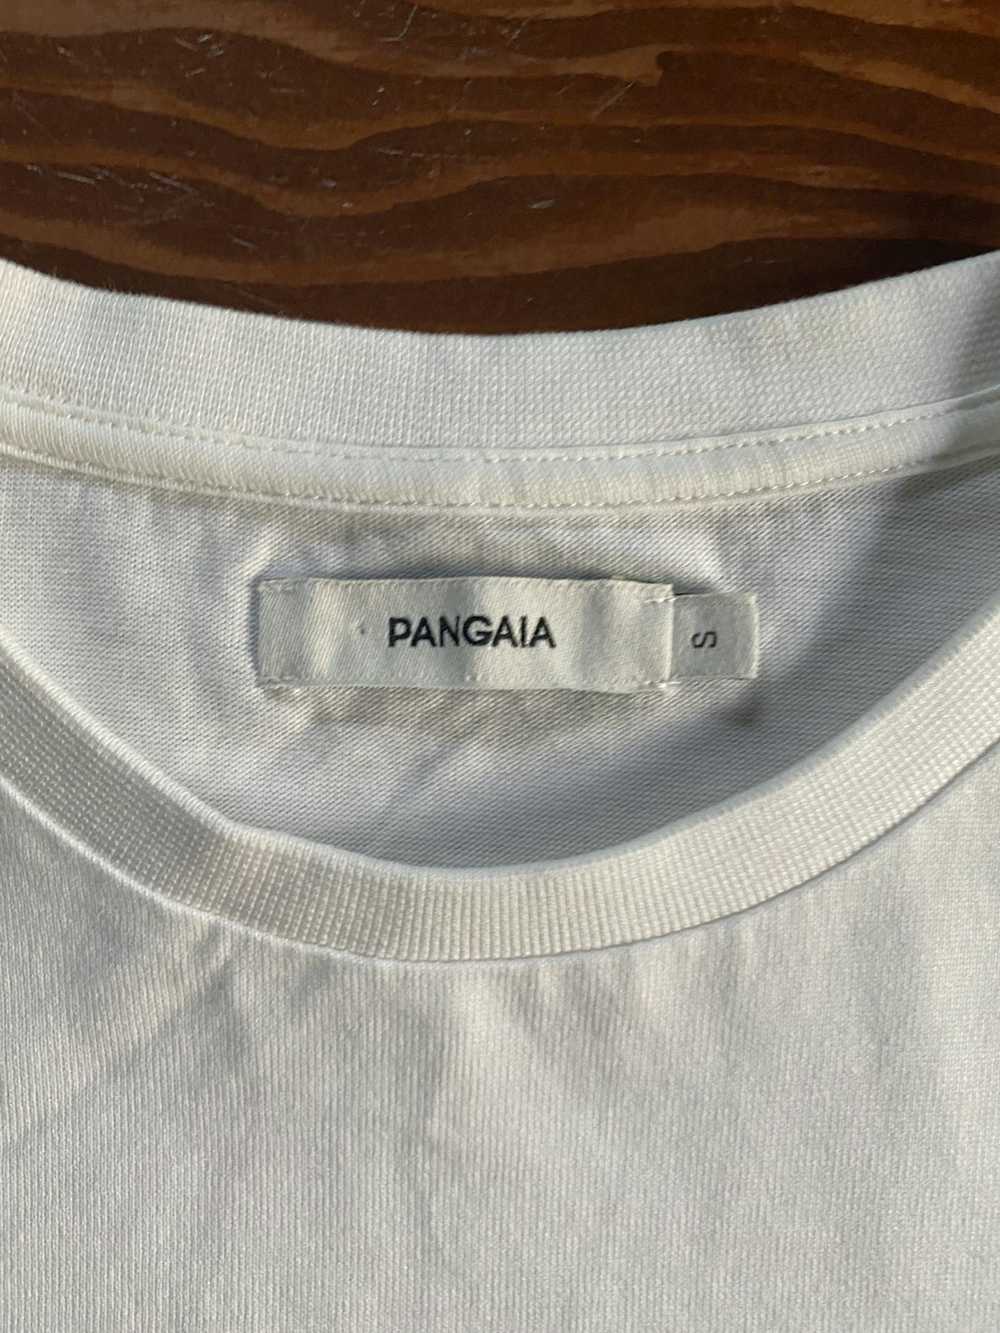 Pangaia Pangaia Organic White Cotton Tee - image 3